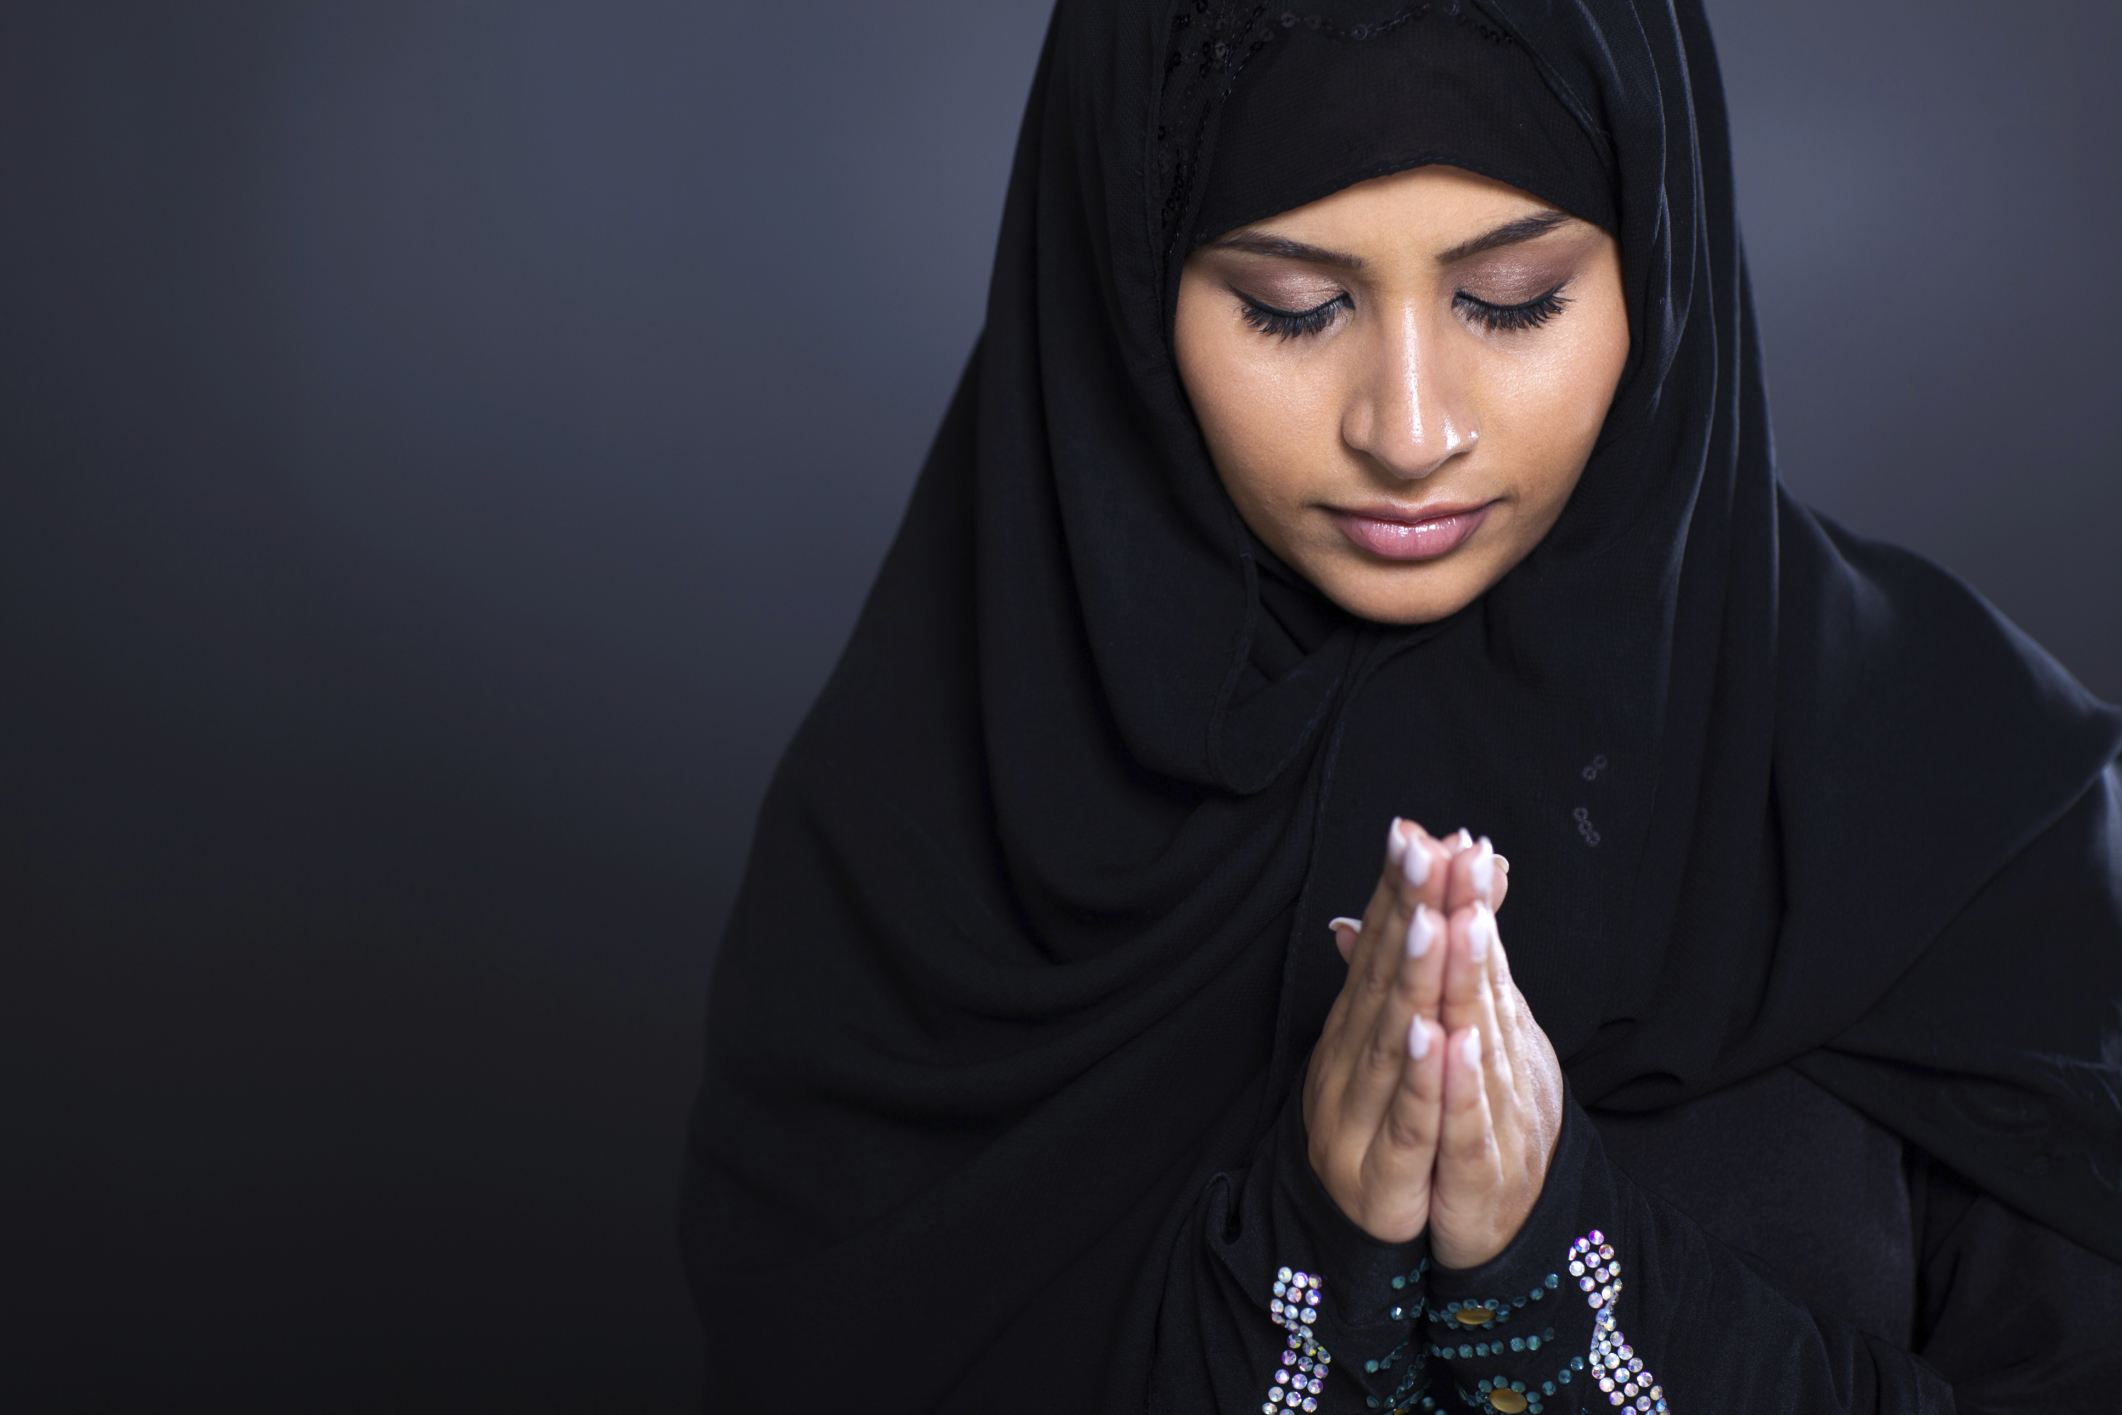 Storia di S., giovanissima blogger italiana convertita all’Islam